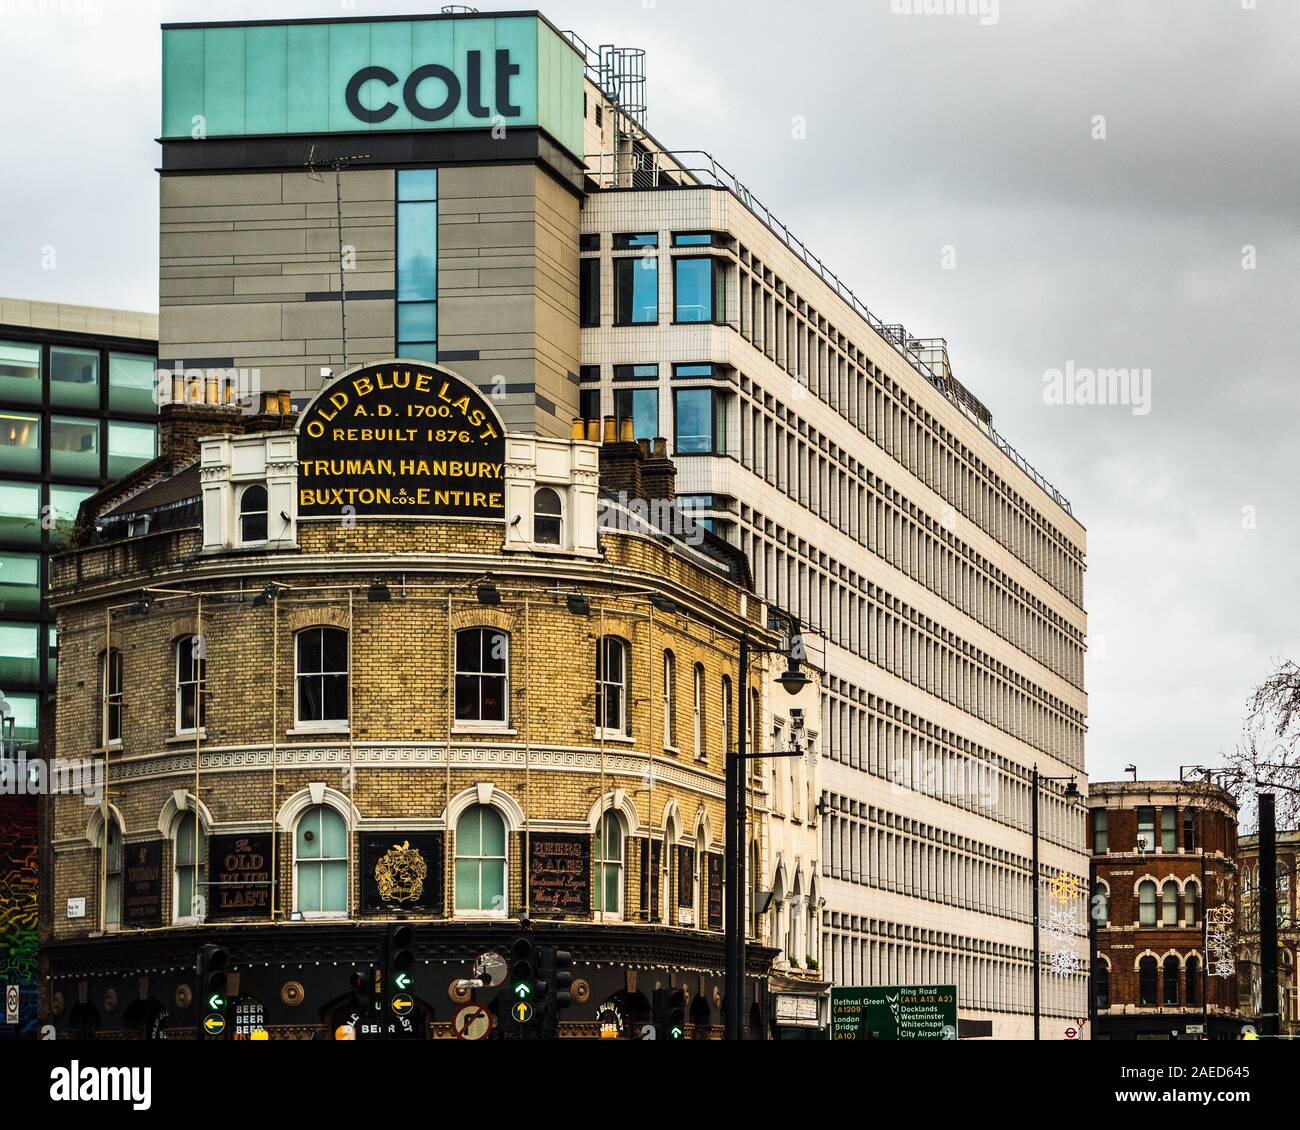 Colt Technology Services Group Limited Head Office Great Eastern Street London. Colt è una multinazionale azienda delle telecomunicazioni con sede a Londra. Foto Stock